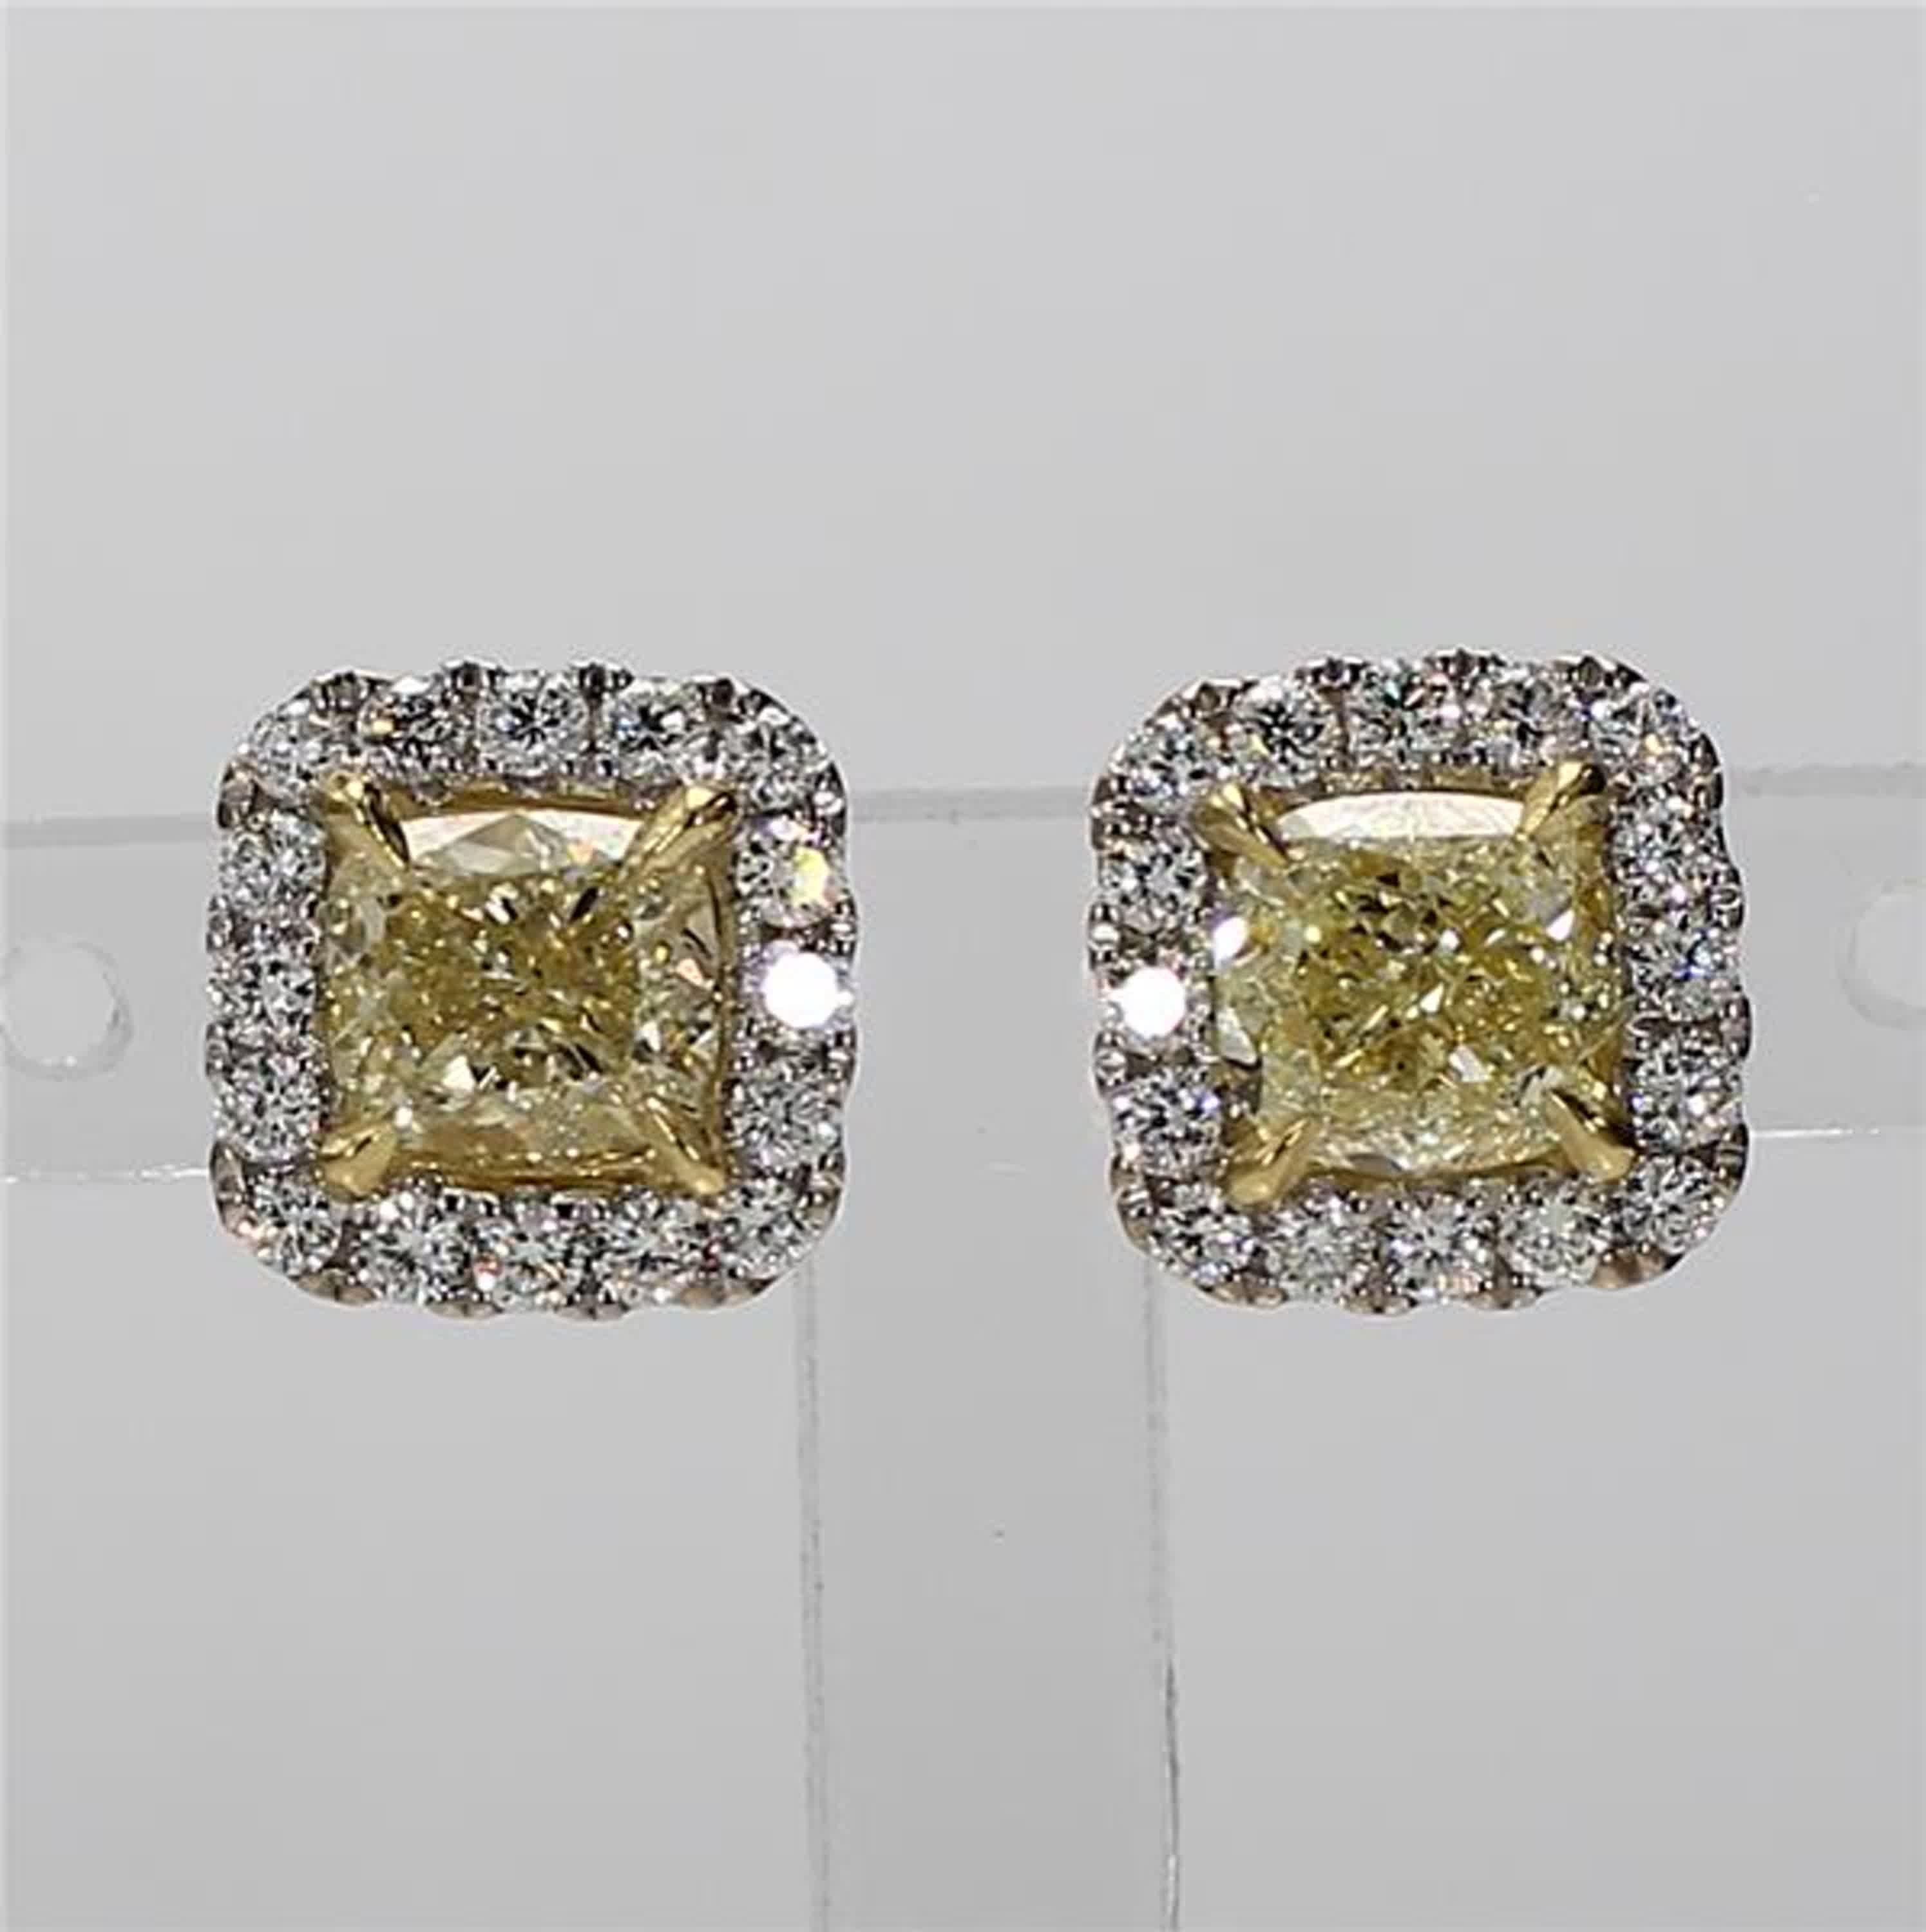 Les boucles d'oreilles classiques en diamant certifié GIA de Raregemworld. Monté dans une belle monture en or jaune et blanc 18 carats avec des diamants jaunes naturels de taille coussin. Les diamants jaunes sont entourés d'une mêlée de diamants